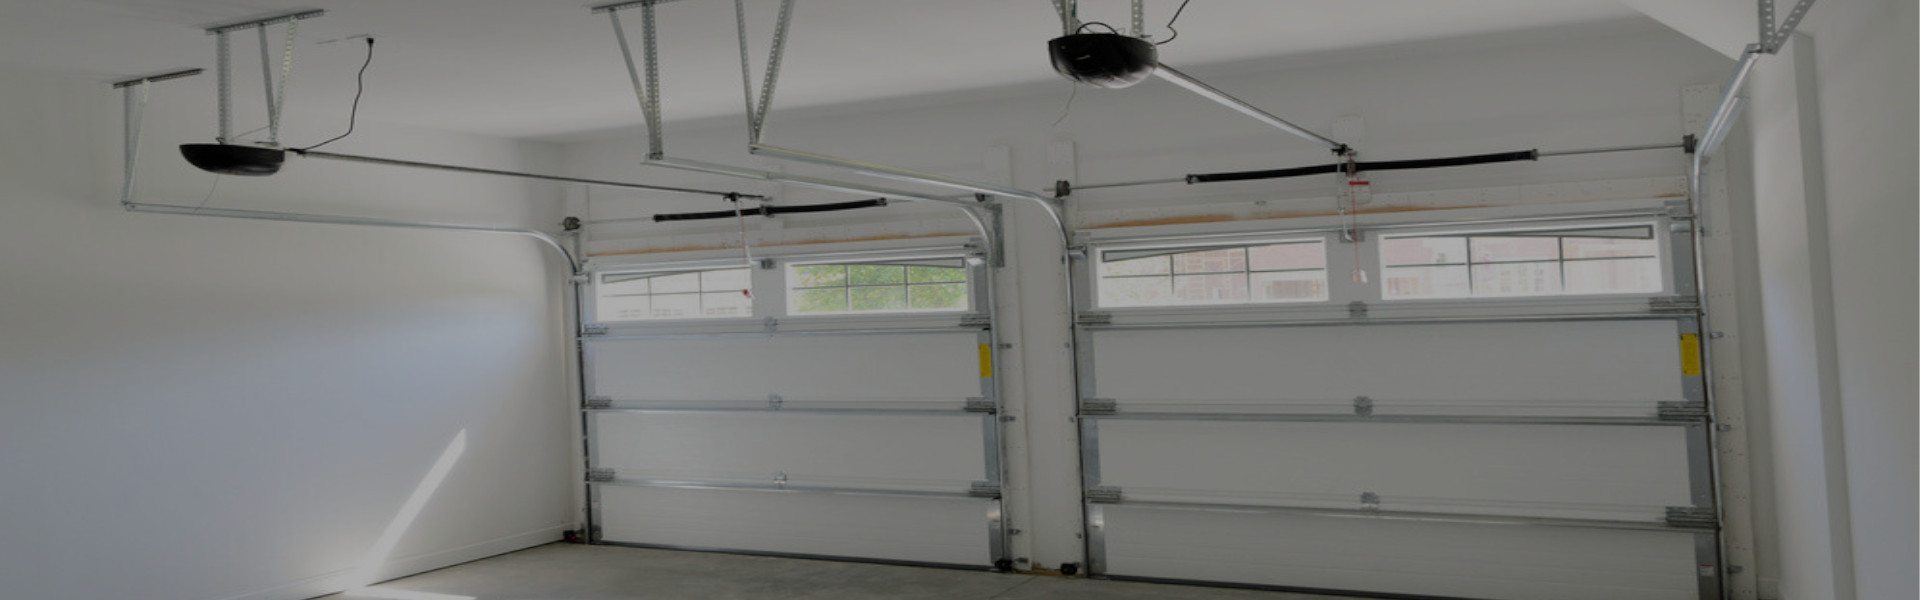 Slider Garage Door Repair, Glaziers in Manor Park, E12